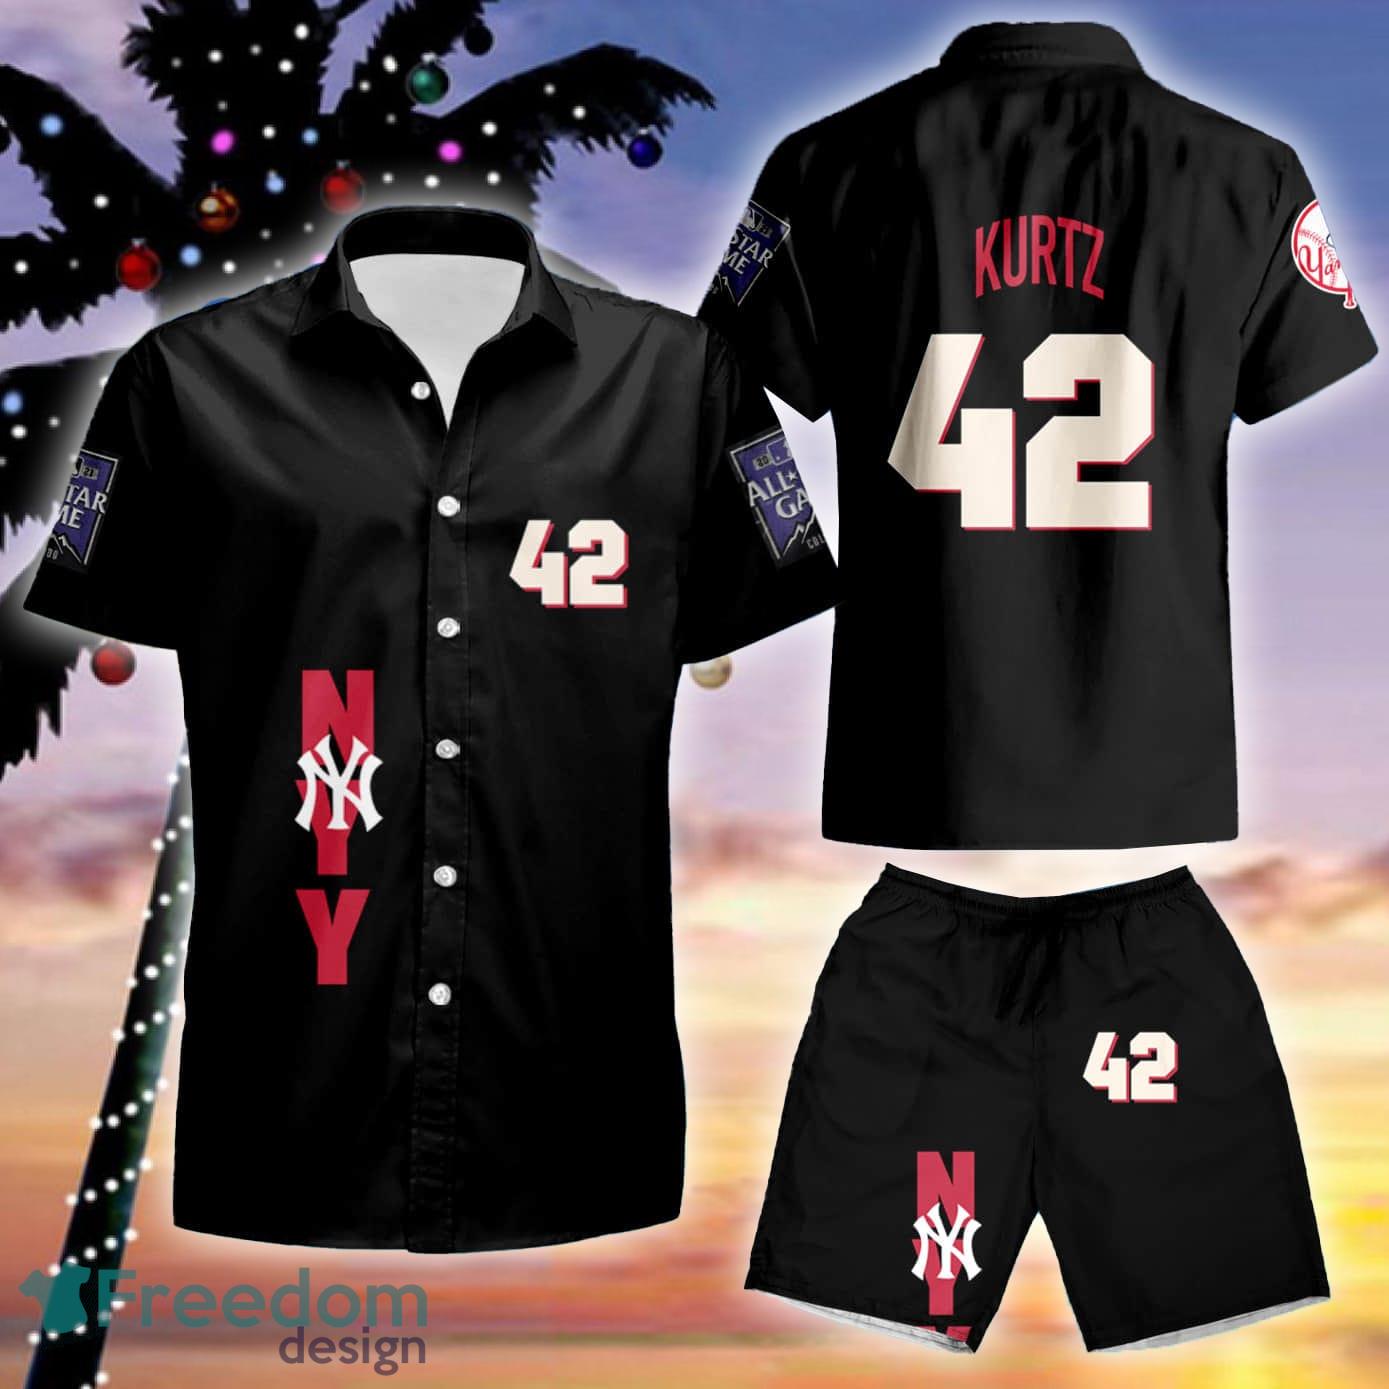 Aaron Judge New York Yankees Jersey, Aaron Judge Yankees Uniform